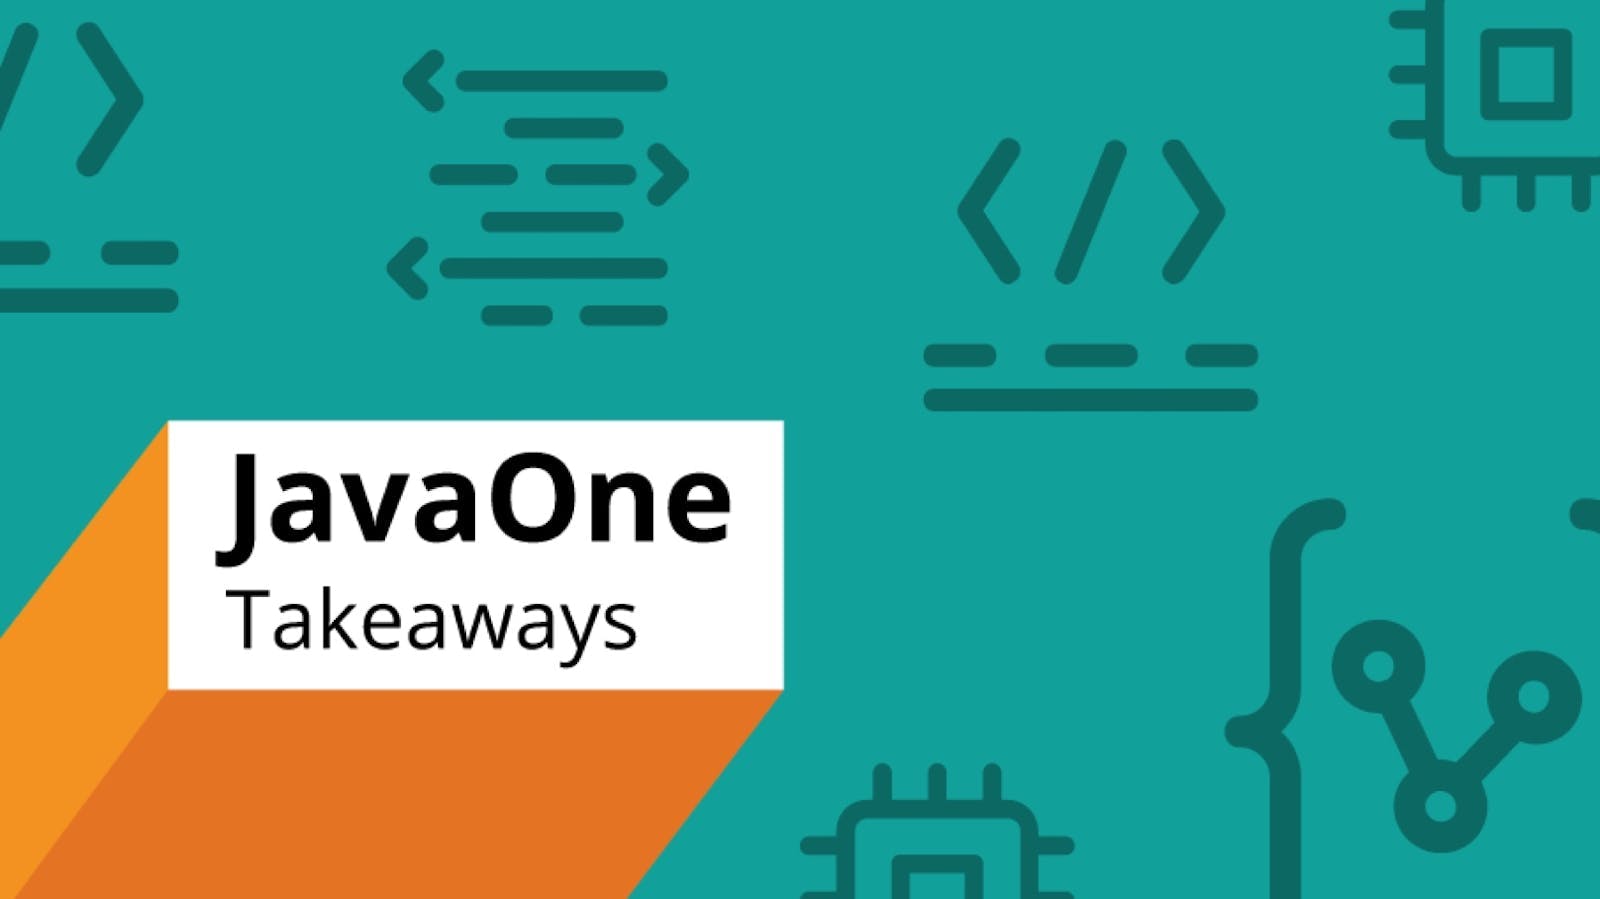 JavaOne Takeaways